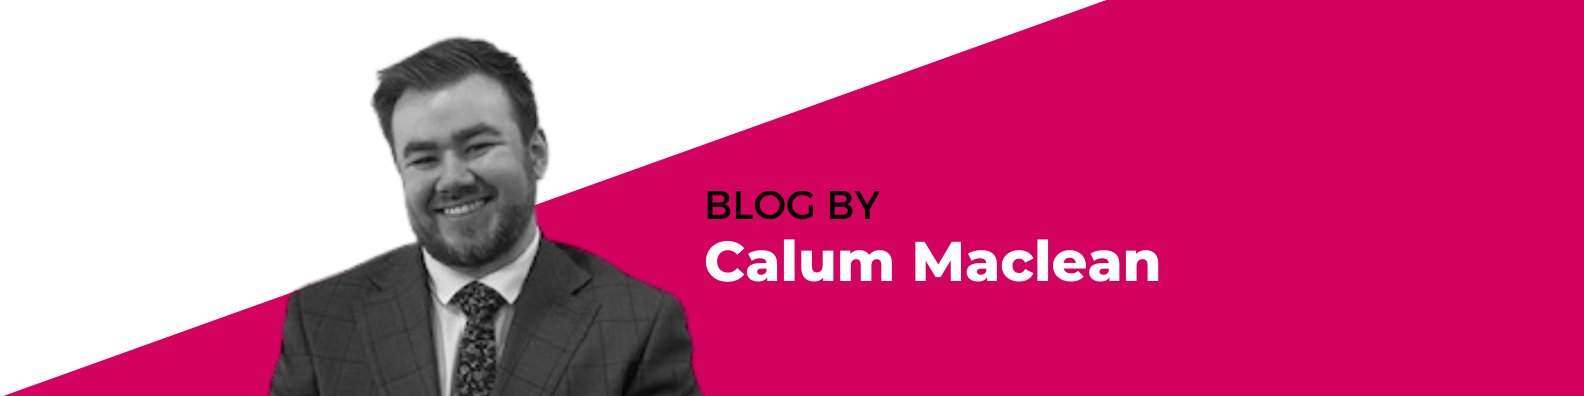 Calum Maclean Blog